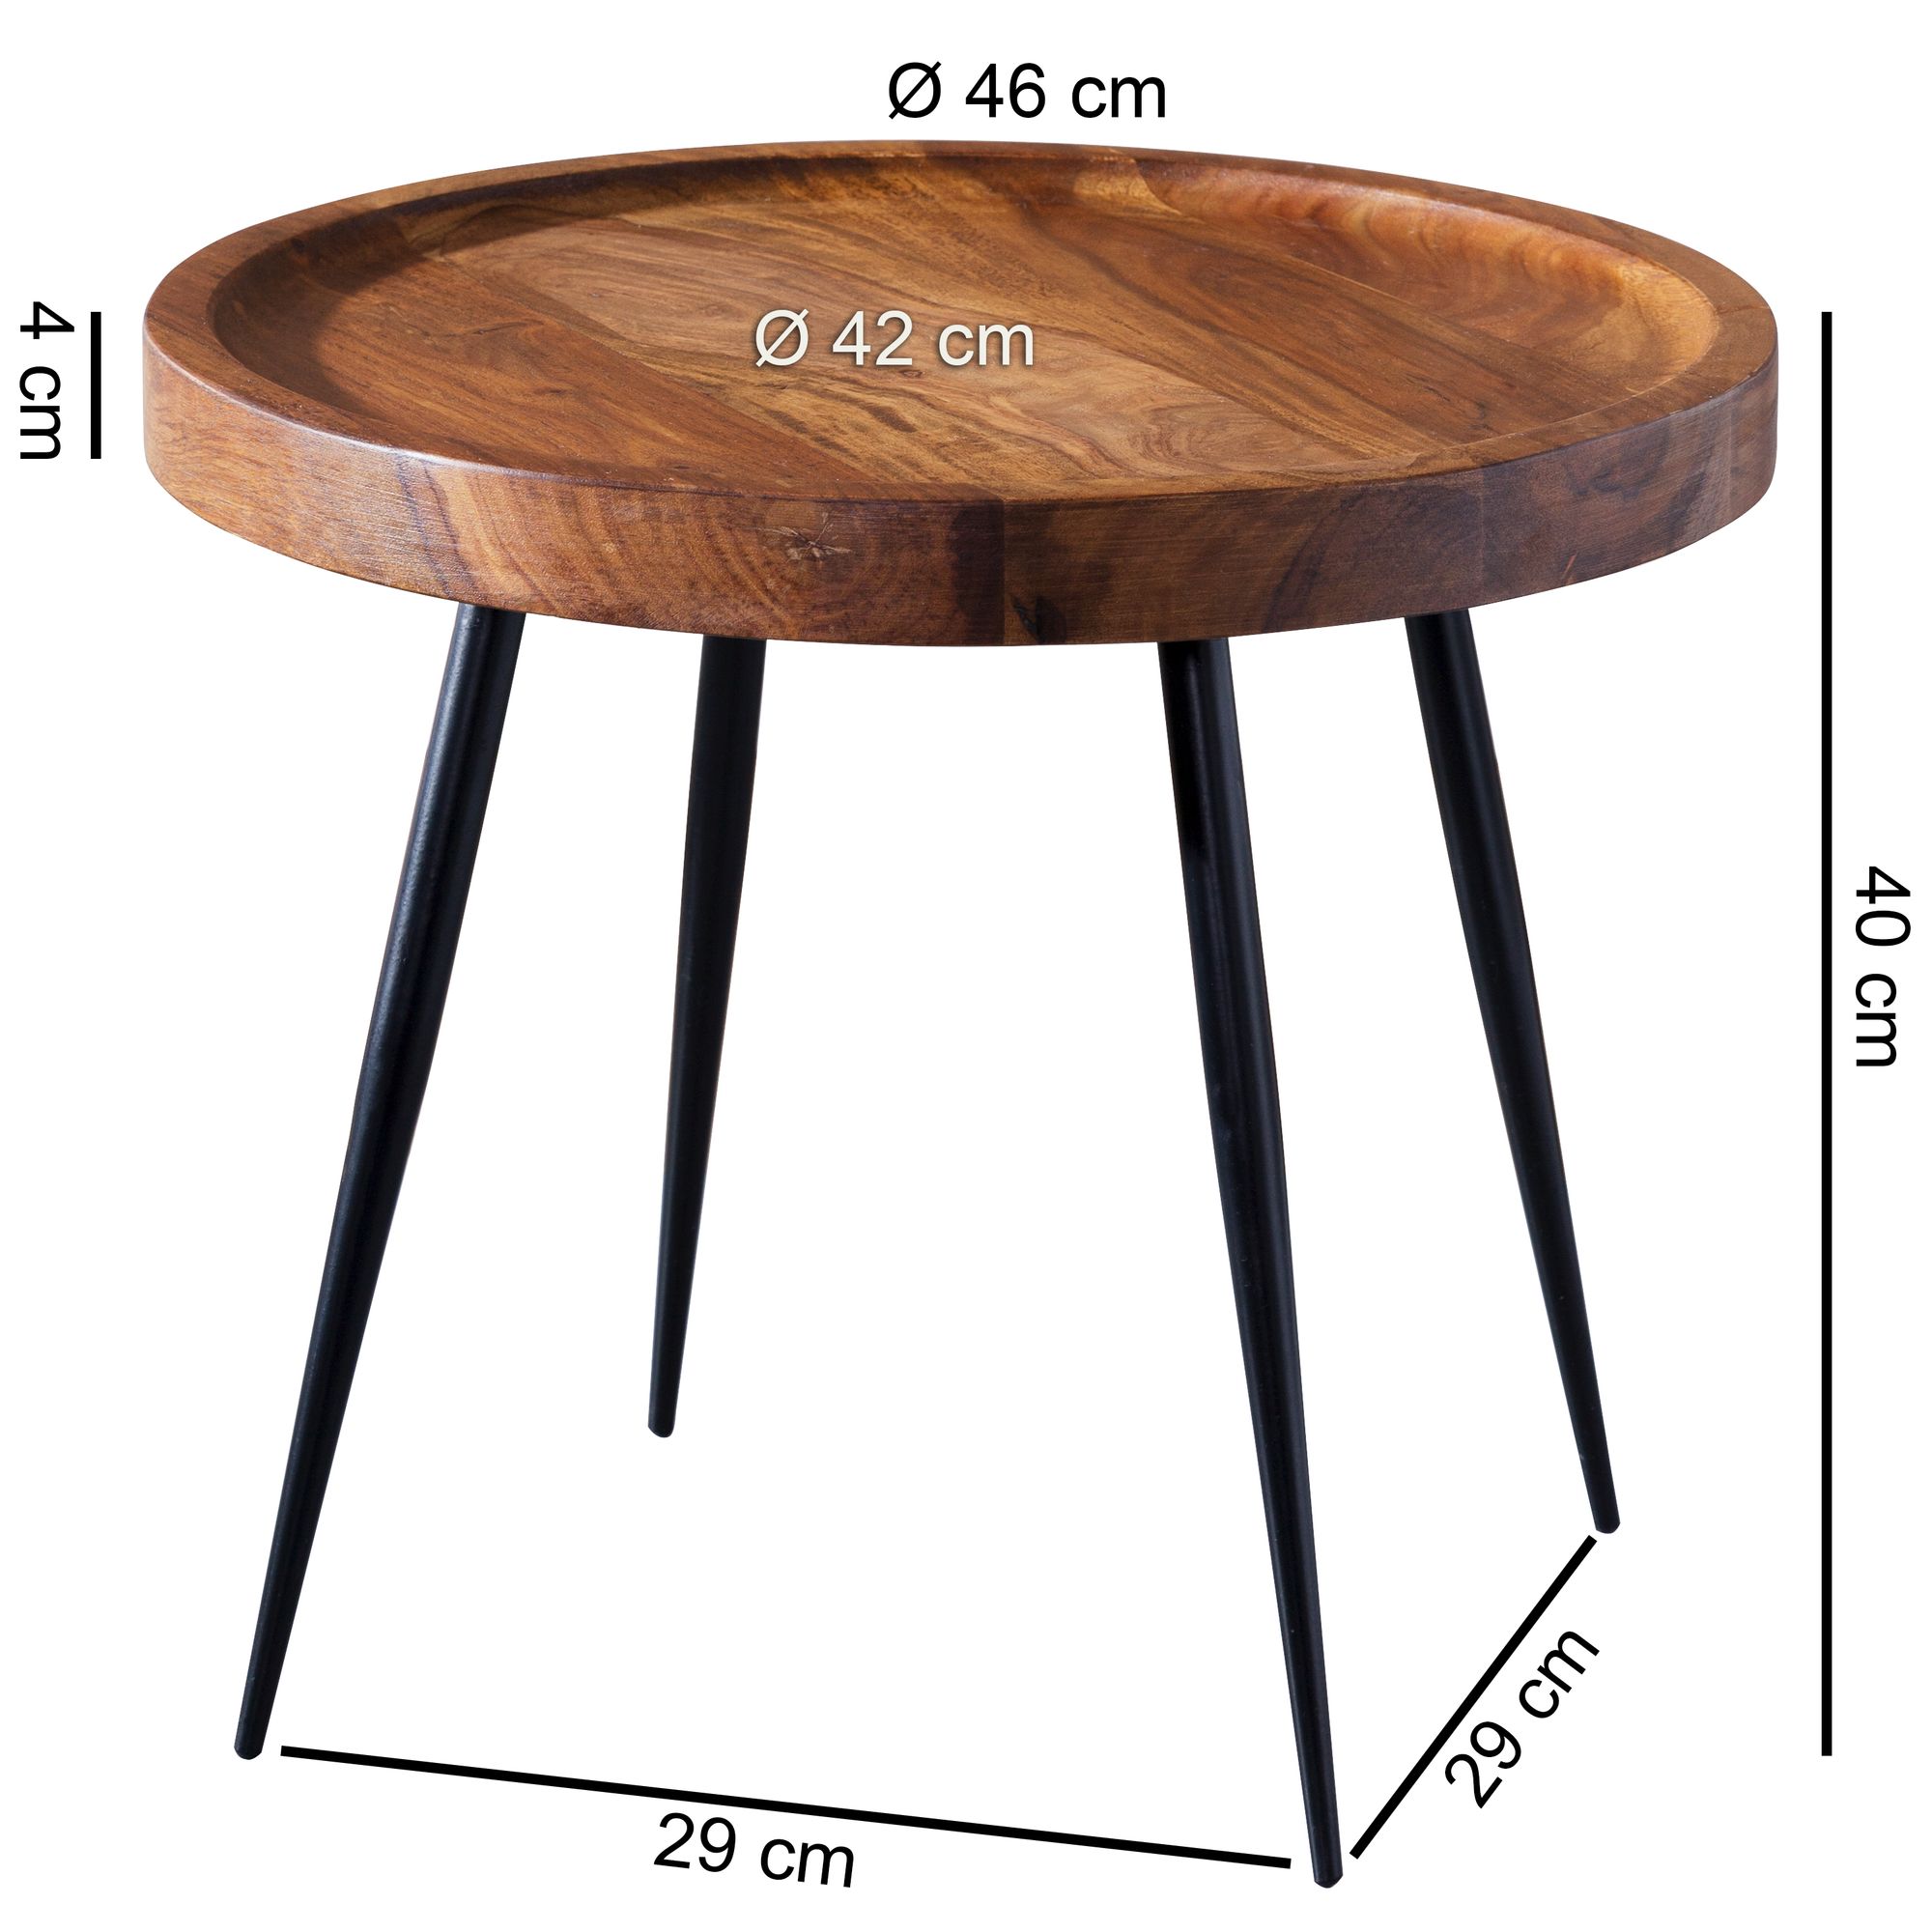 Beistelltisch 46 X 40 X 46 Cm Sheesham Holz Metall Couchtisch Industrial Style Echtholz Tischchen Wohnzimmer Holztisch Sofatisch Metallbeine